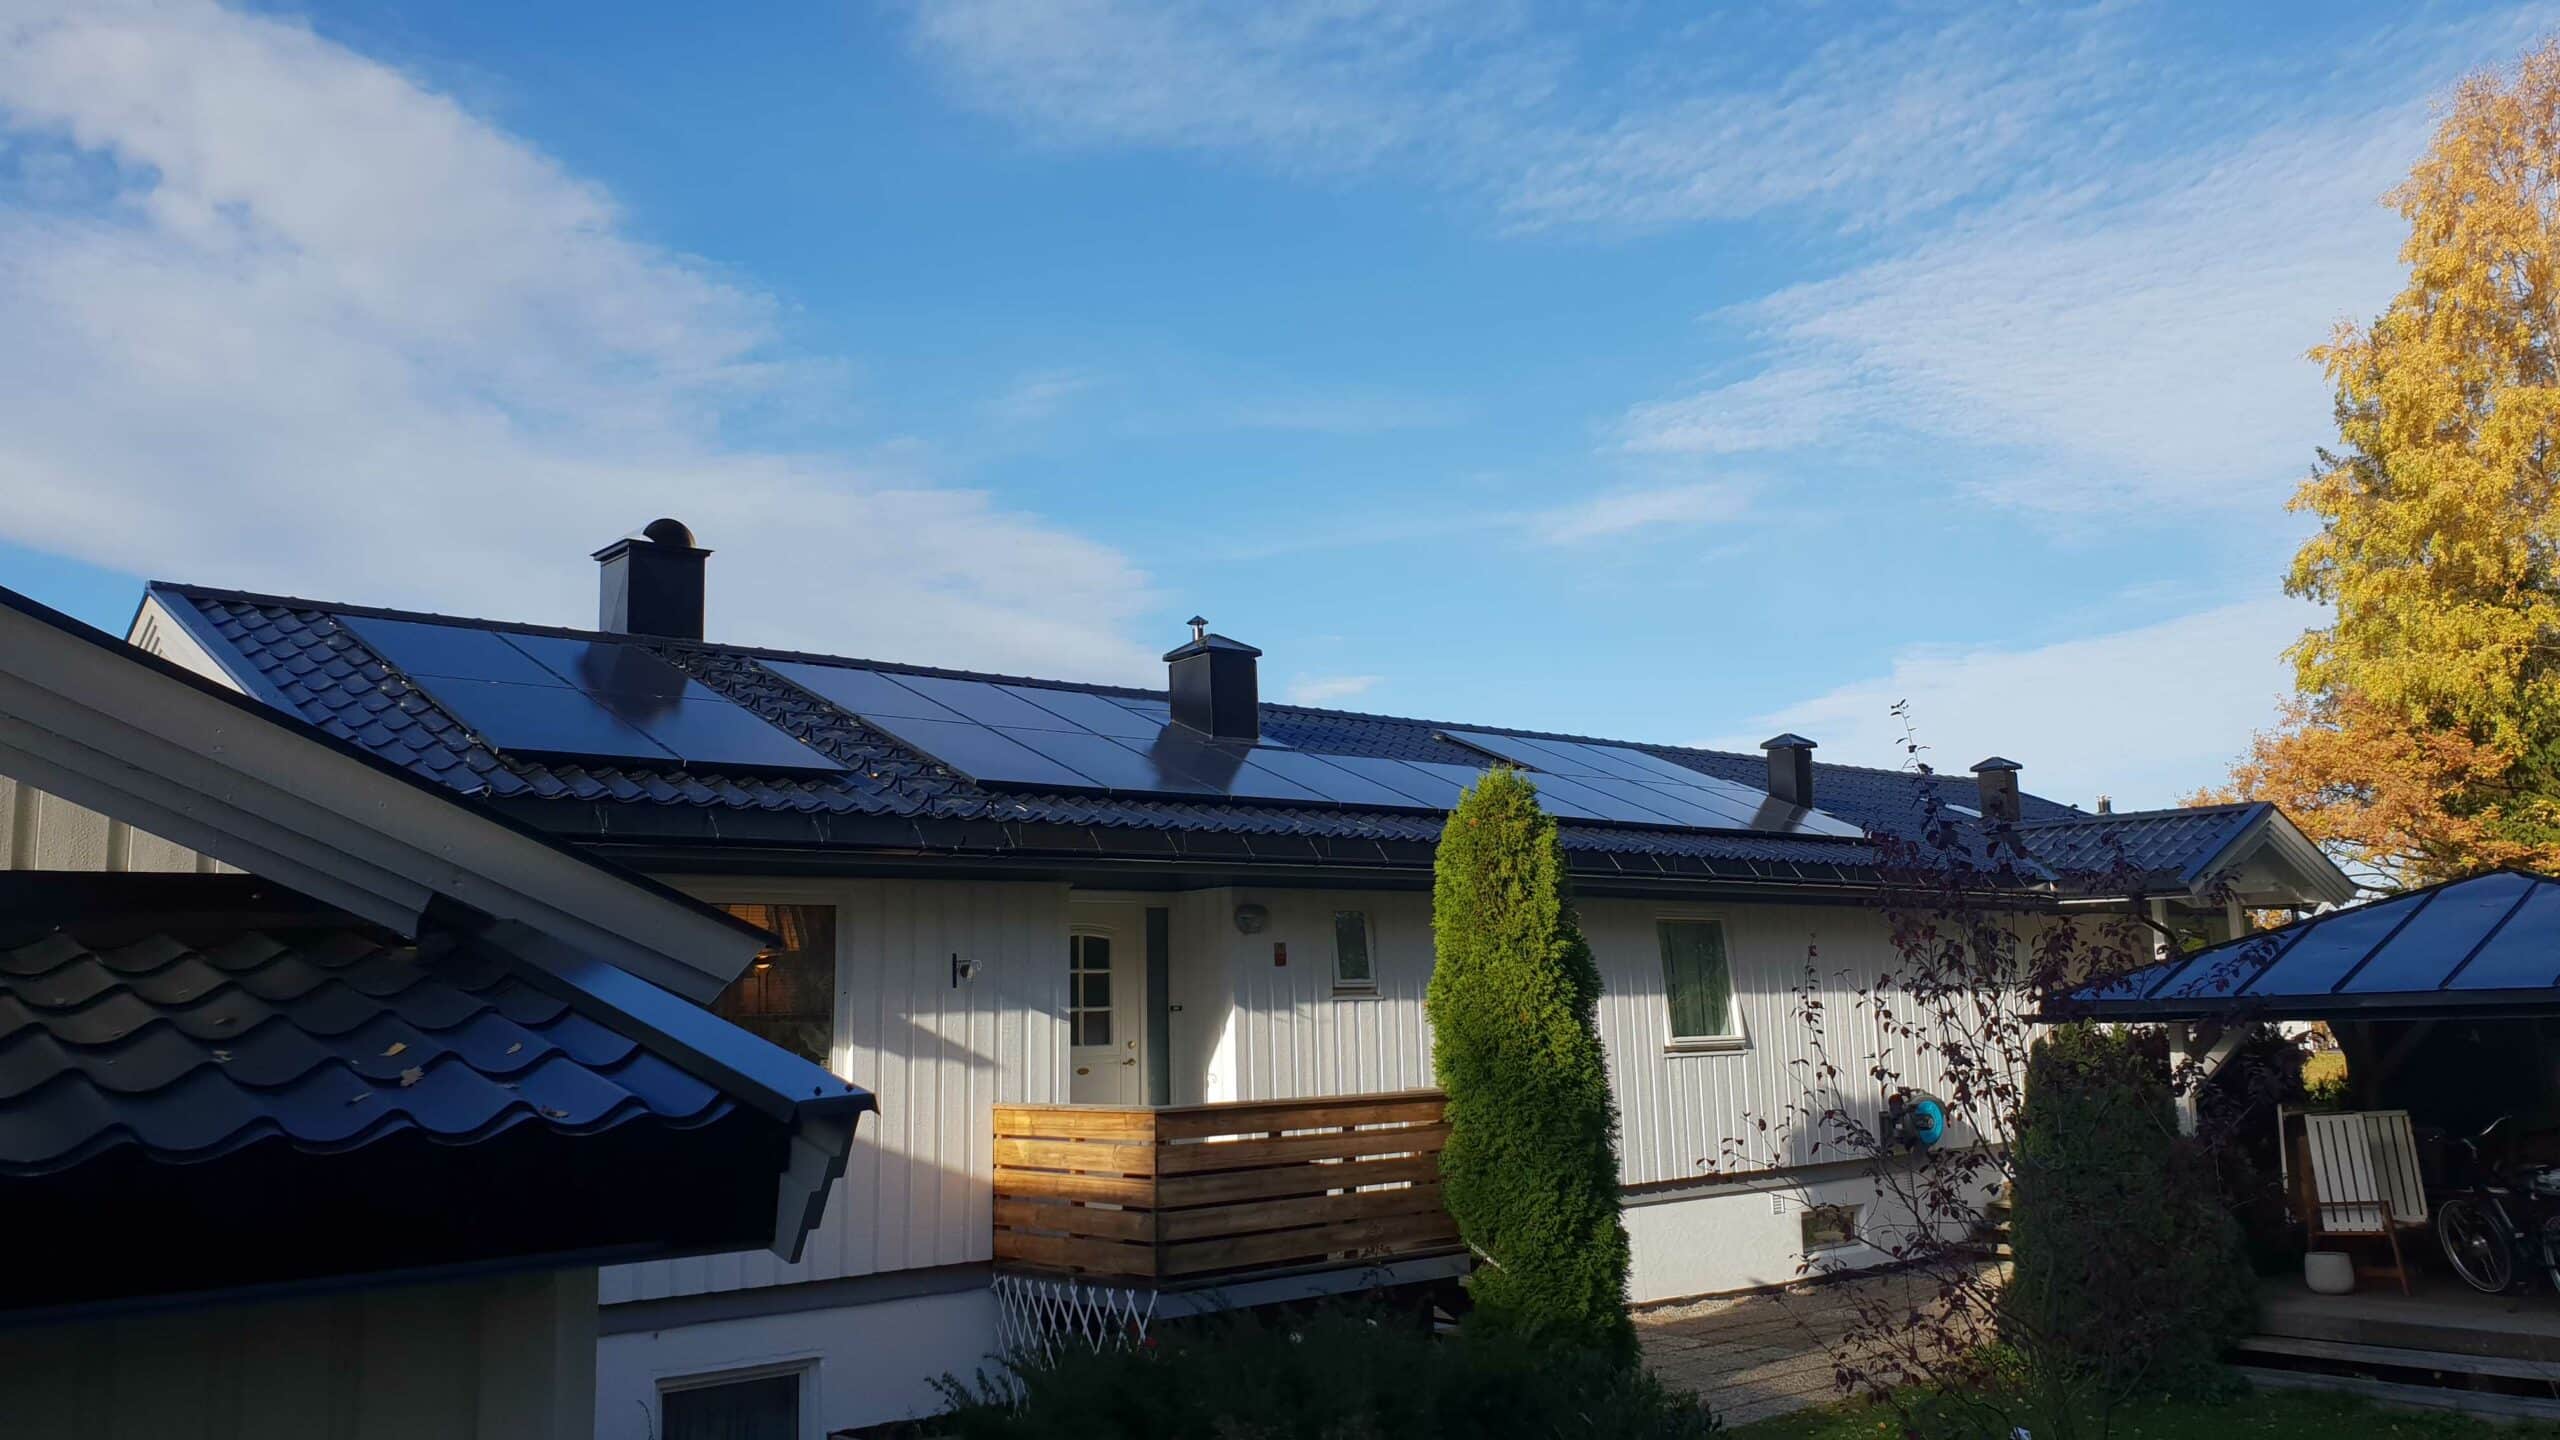 Bilde av hus med solceller på taket.